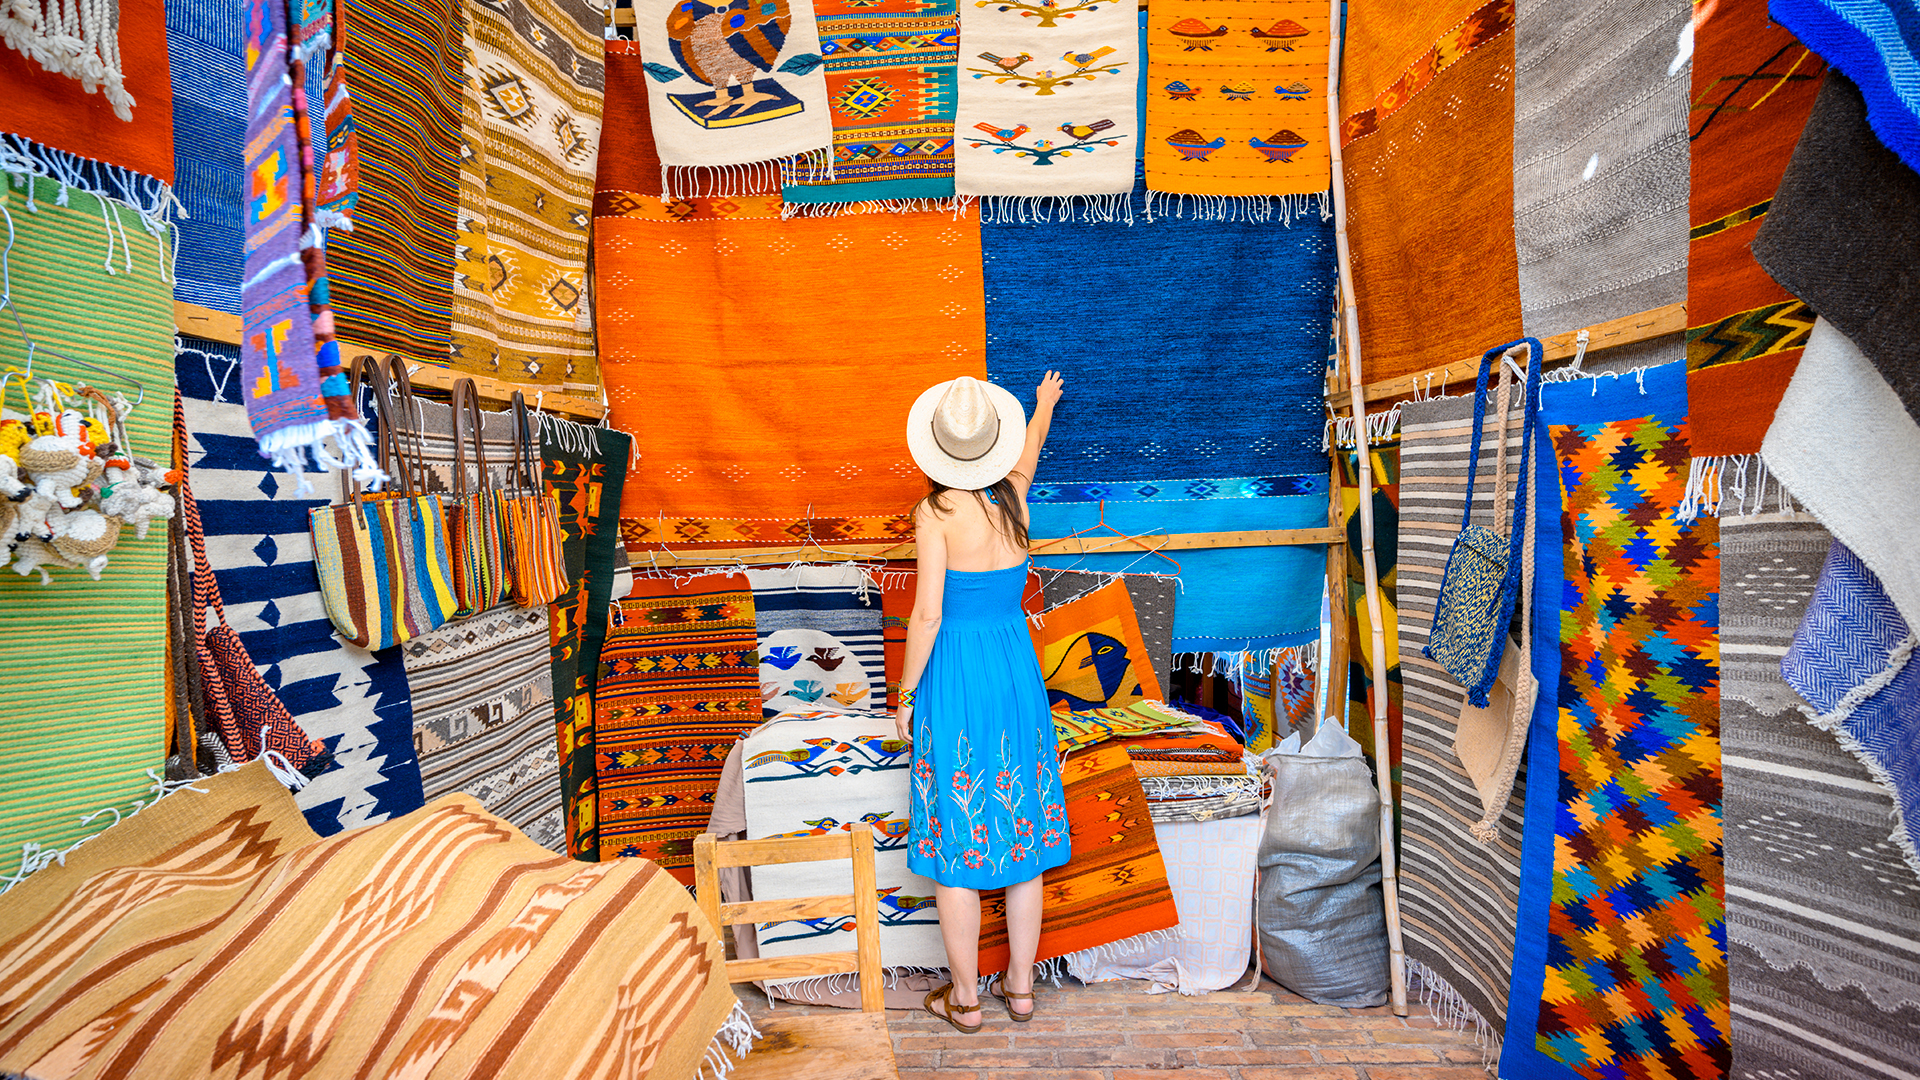 Textiles artesanales en el mercado de Oaxaca